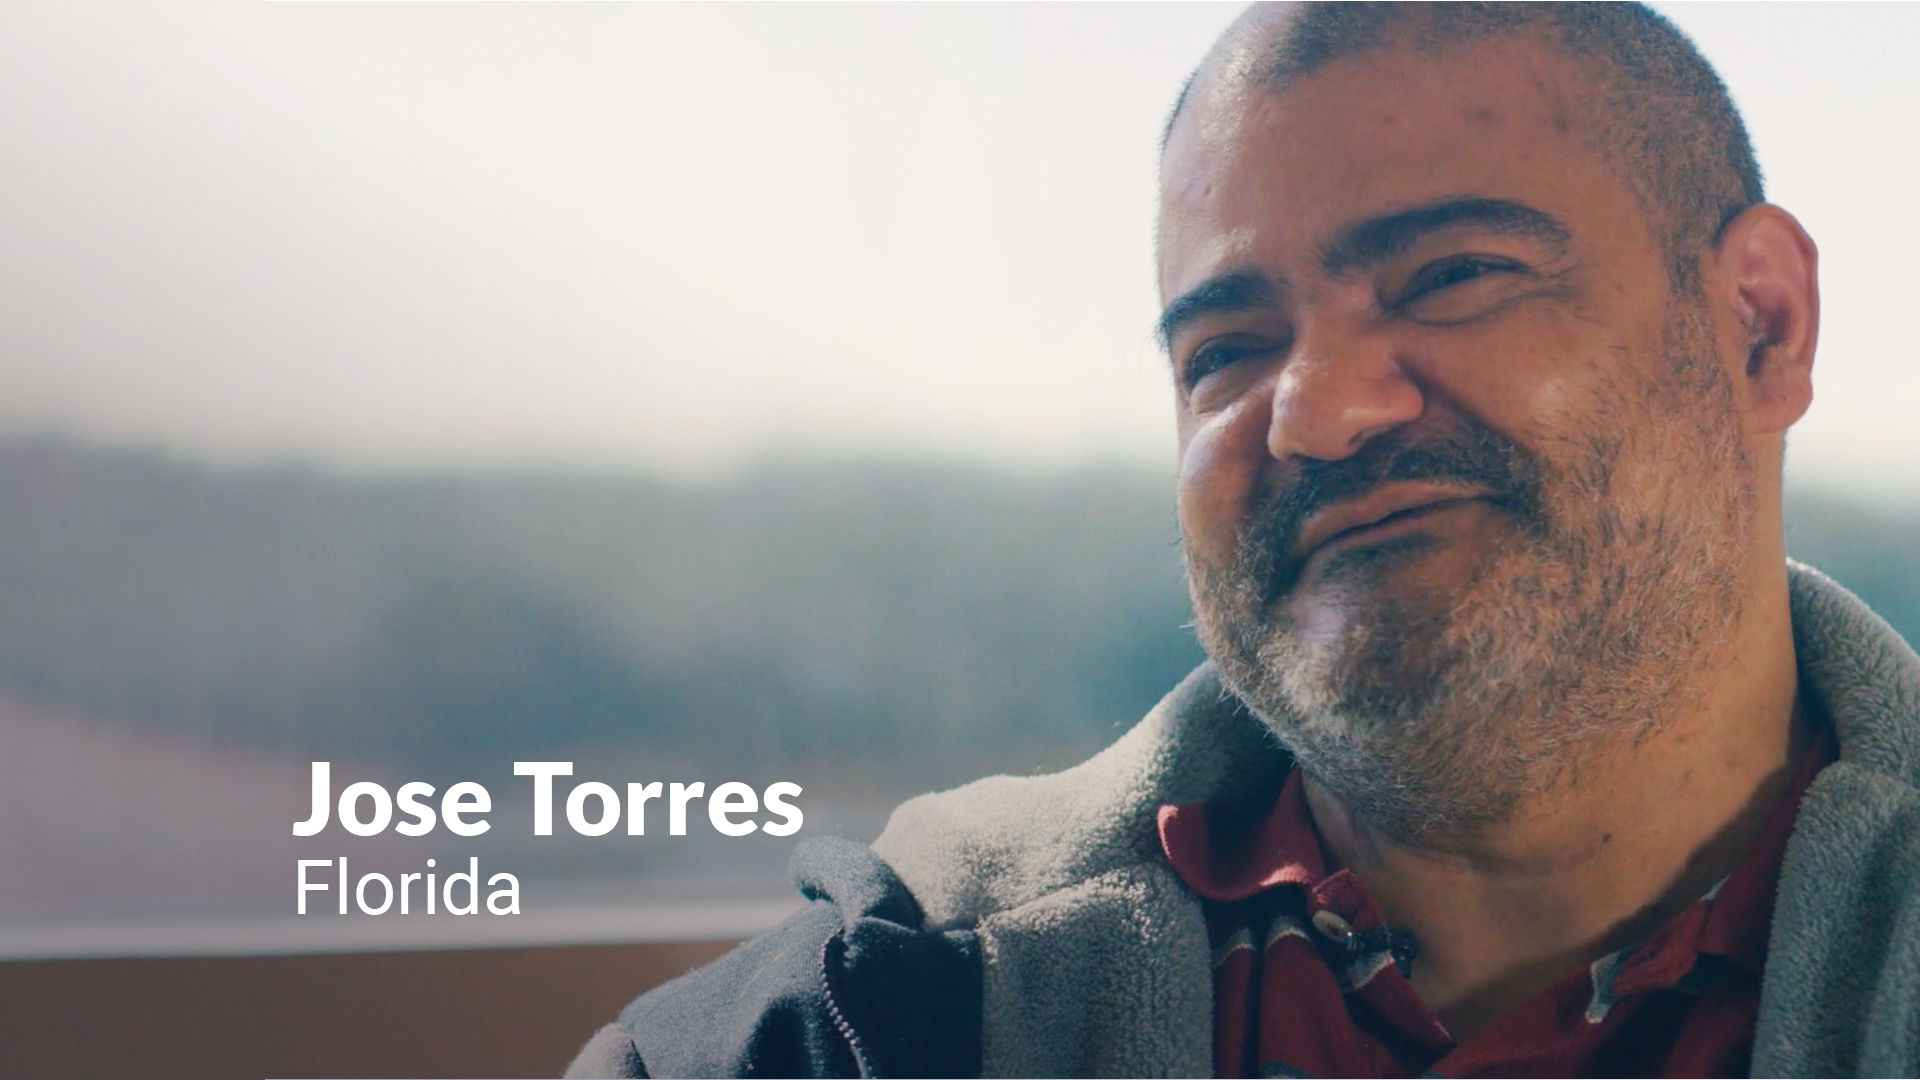 Jose Torres